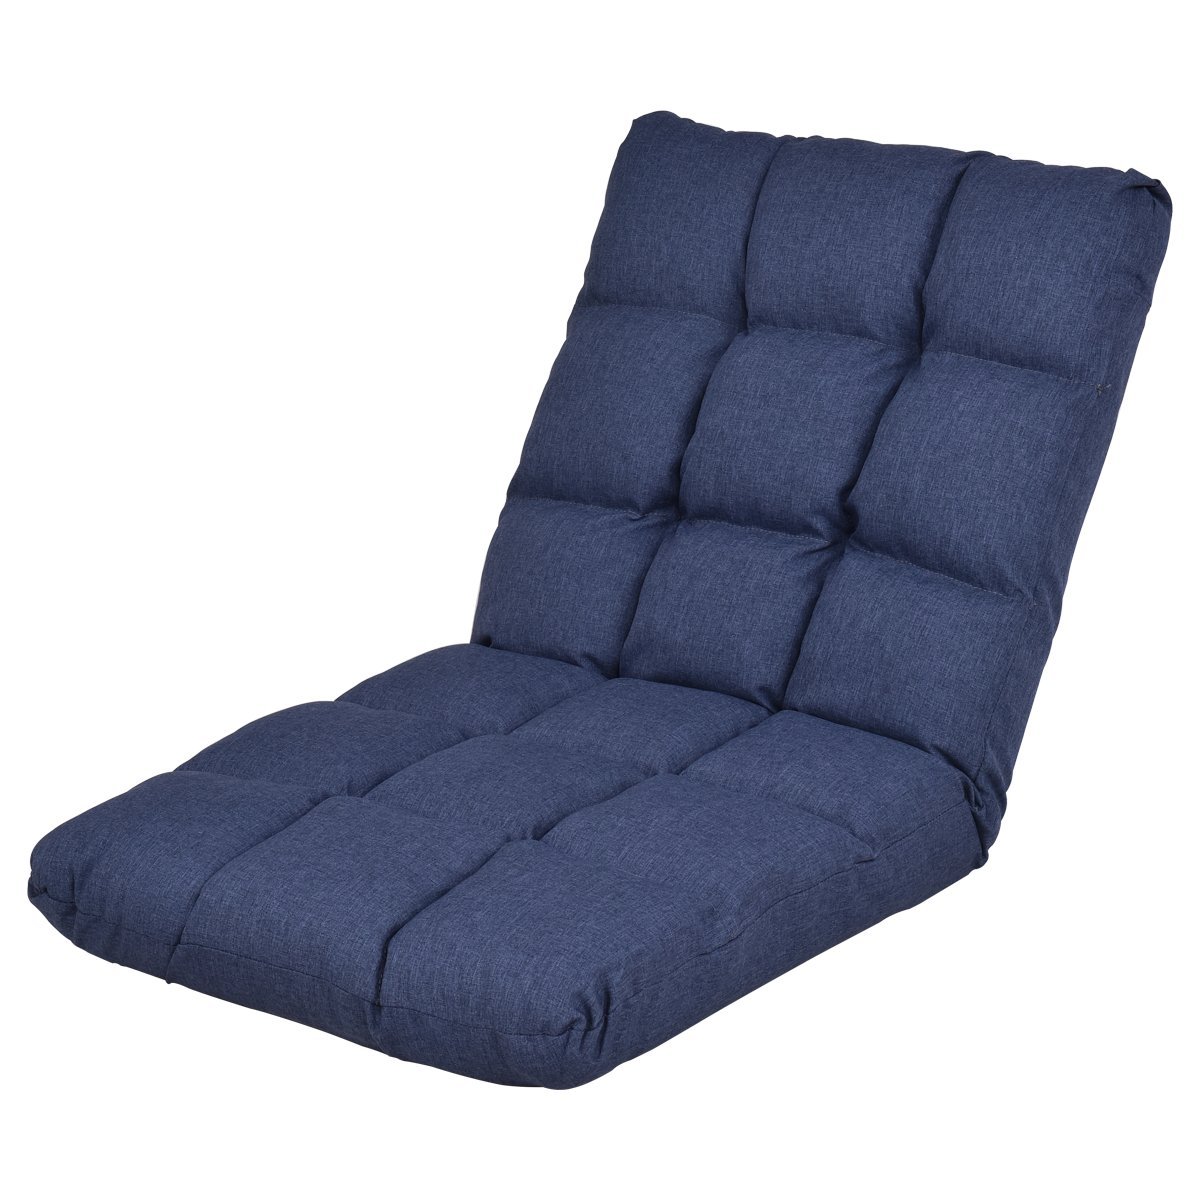 Giantex Adjustable Floor Gaming Sofa Chair 